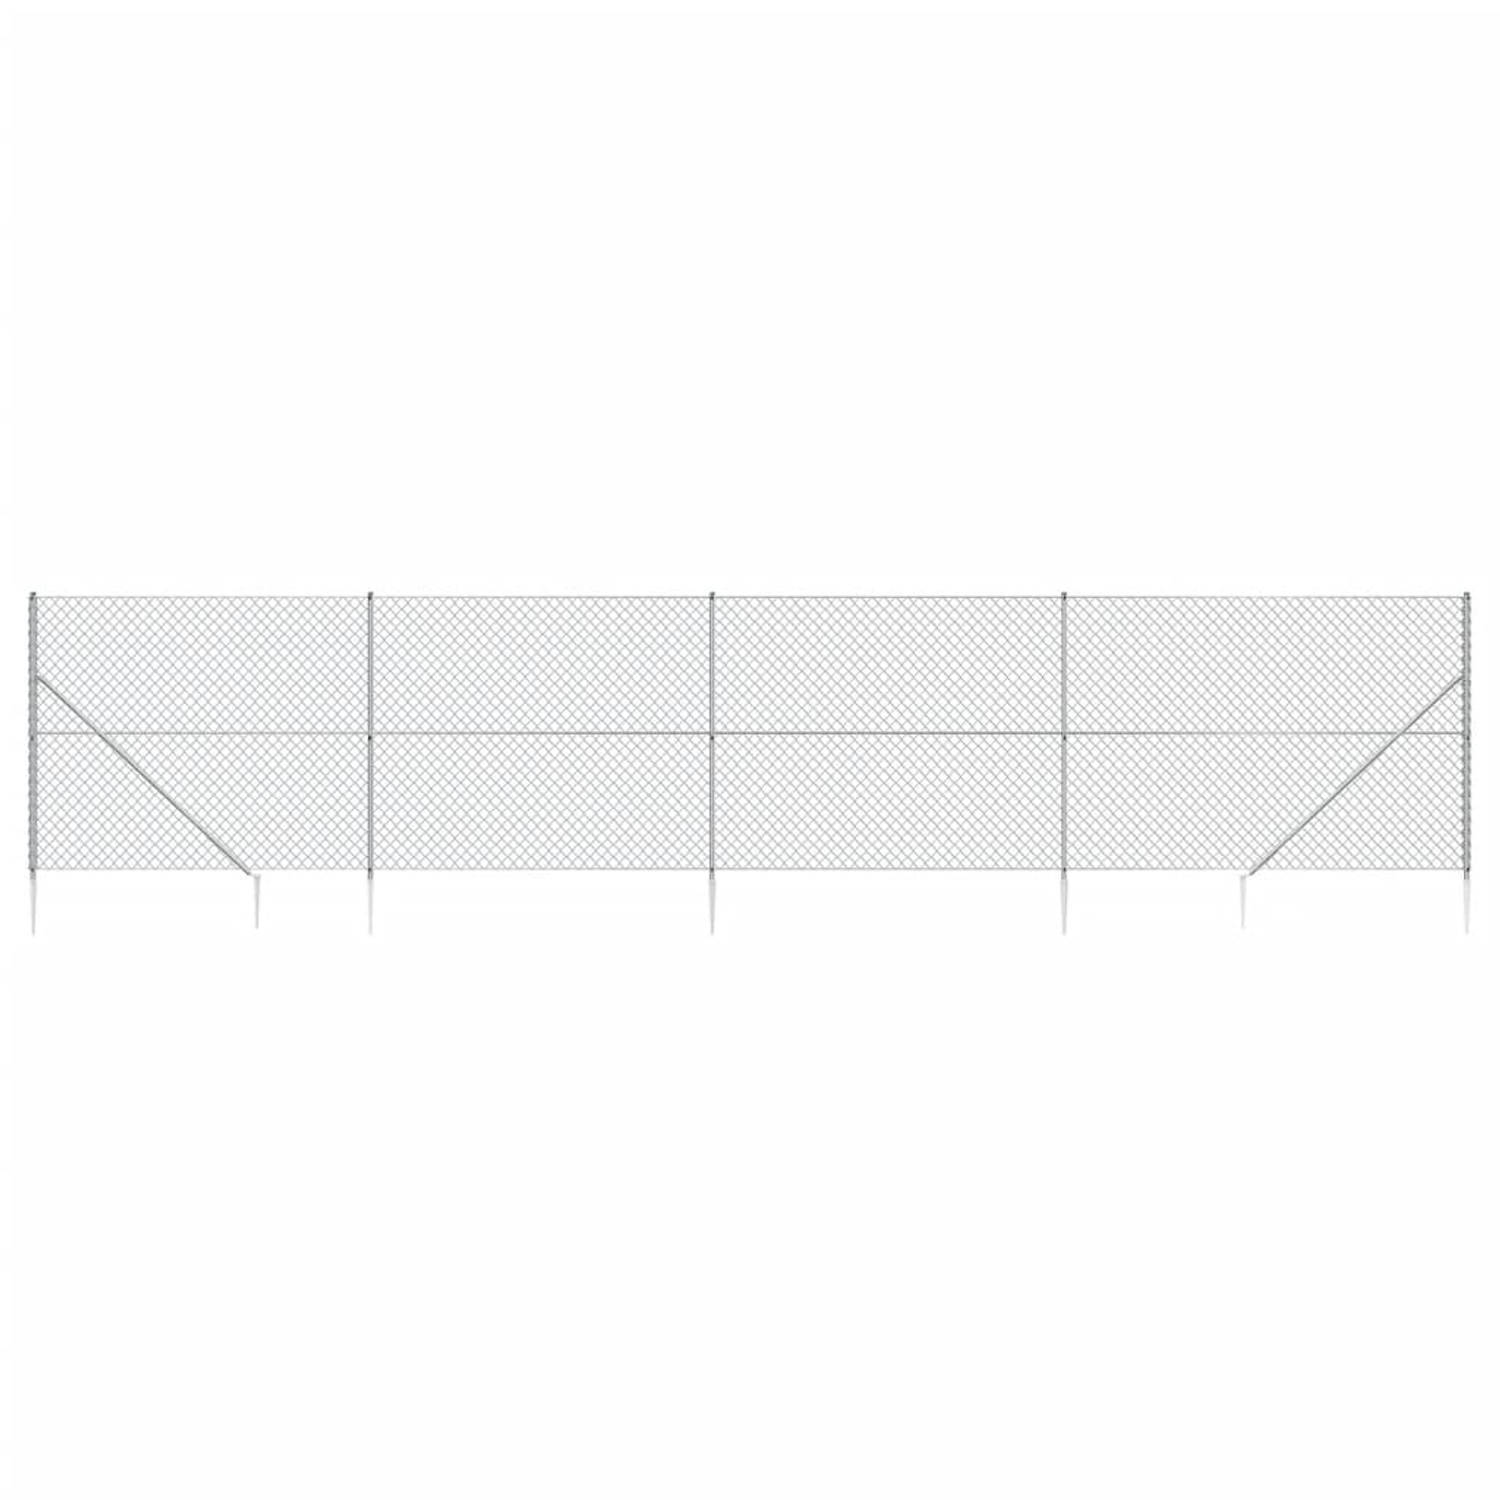 The Living Store Gaashek 1.6 x 10 m (H x L) - Gegalvaniseerd Staal met PVC-coating - Duurzaam en flexibel - Inclusief accessoires - Kleur- zilver